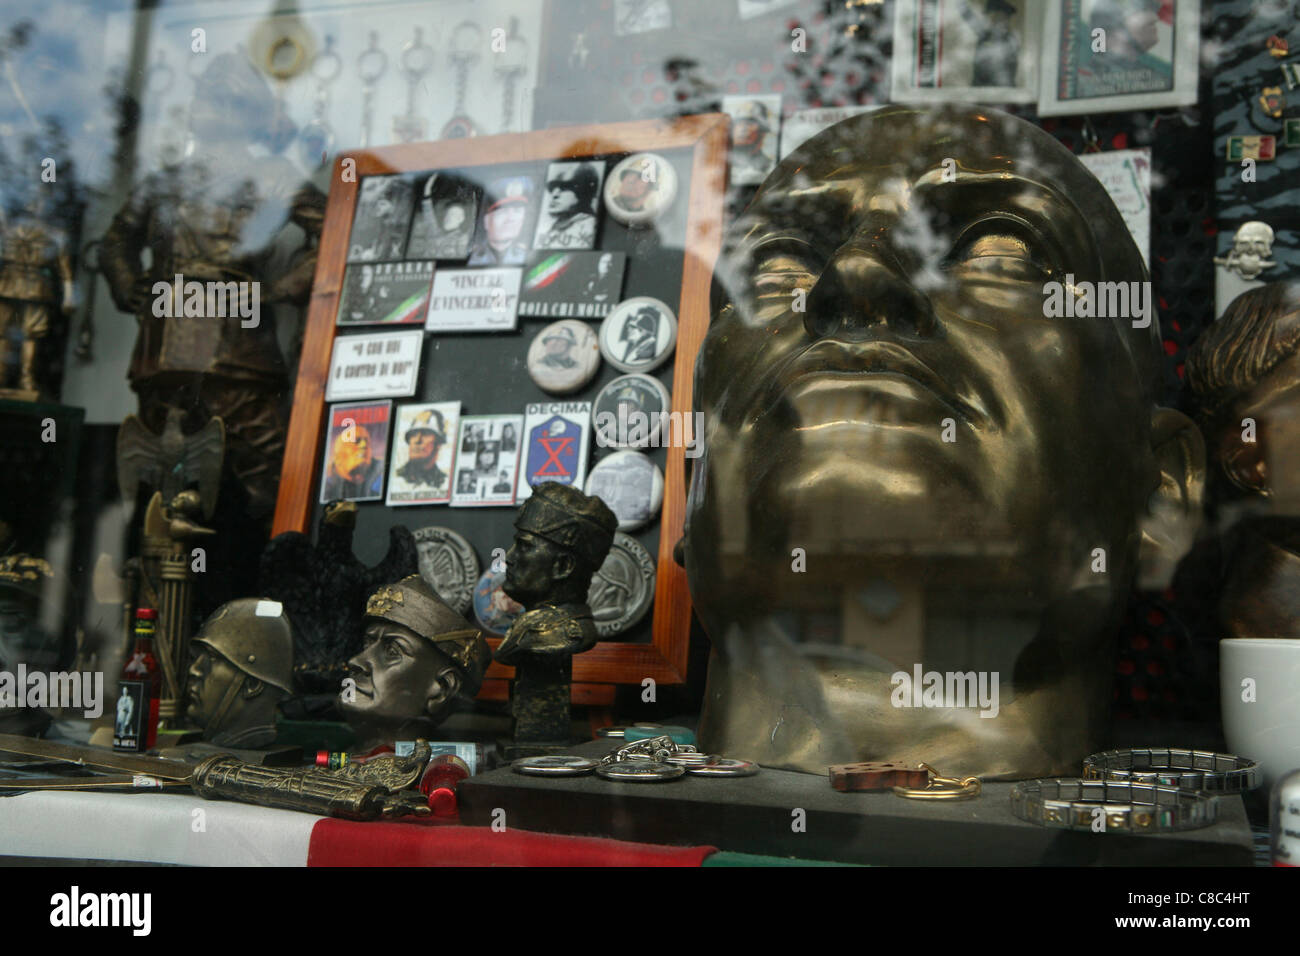 Fascist souvenirs in a souvenir shop in Predappio, Italy. Stock Photo